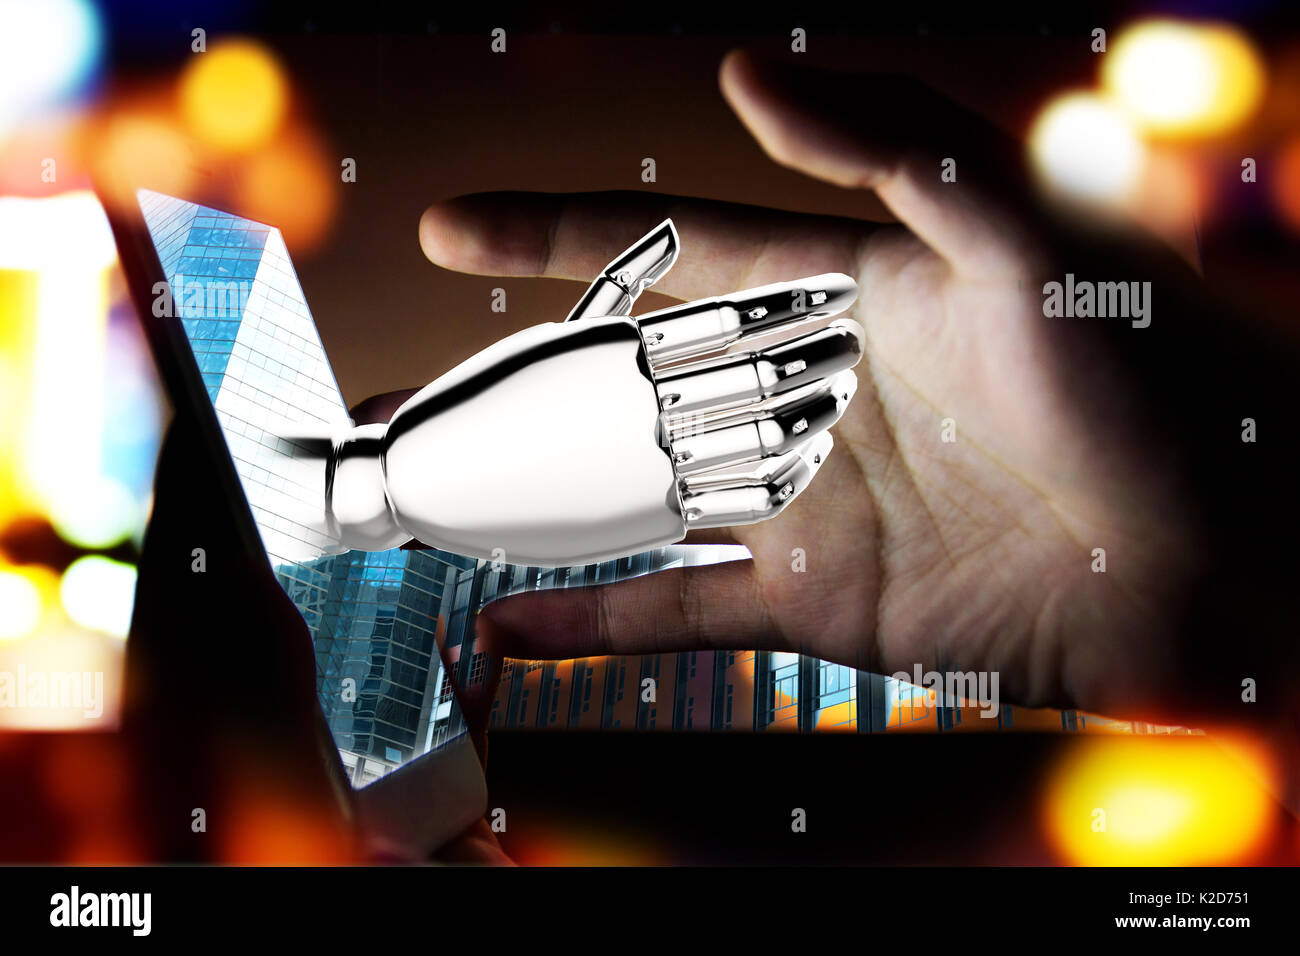 , Robotica intelligenza artificiale , robo advisor , concetto chatbot. 3D rendering di mano di robot pop up fuori del telefono cellulare con la torciera effetto di luce. Foto Stock